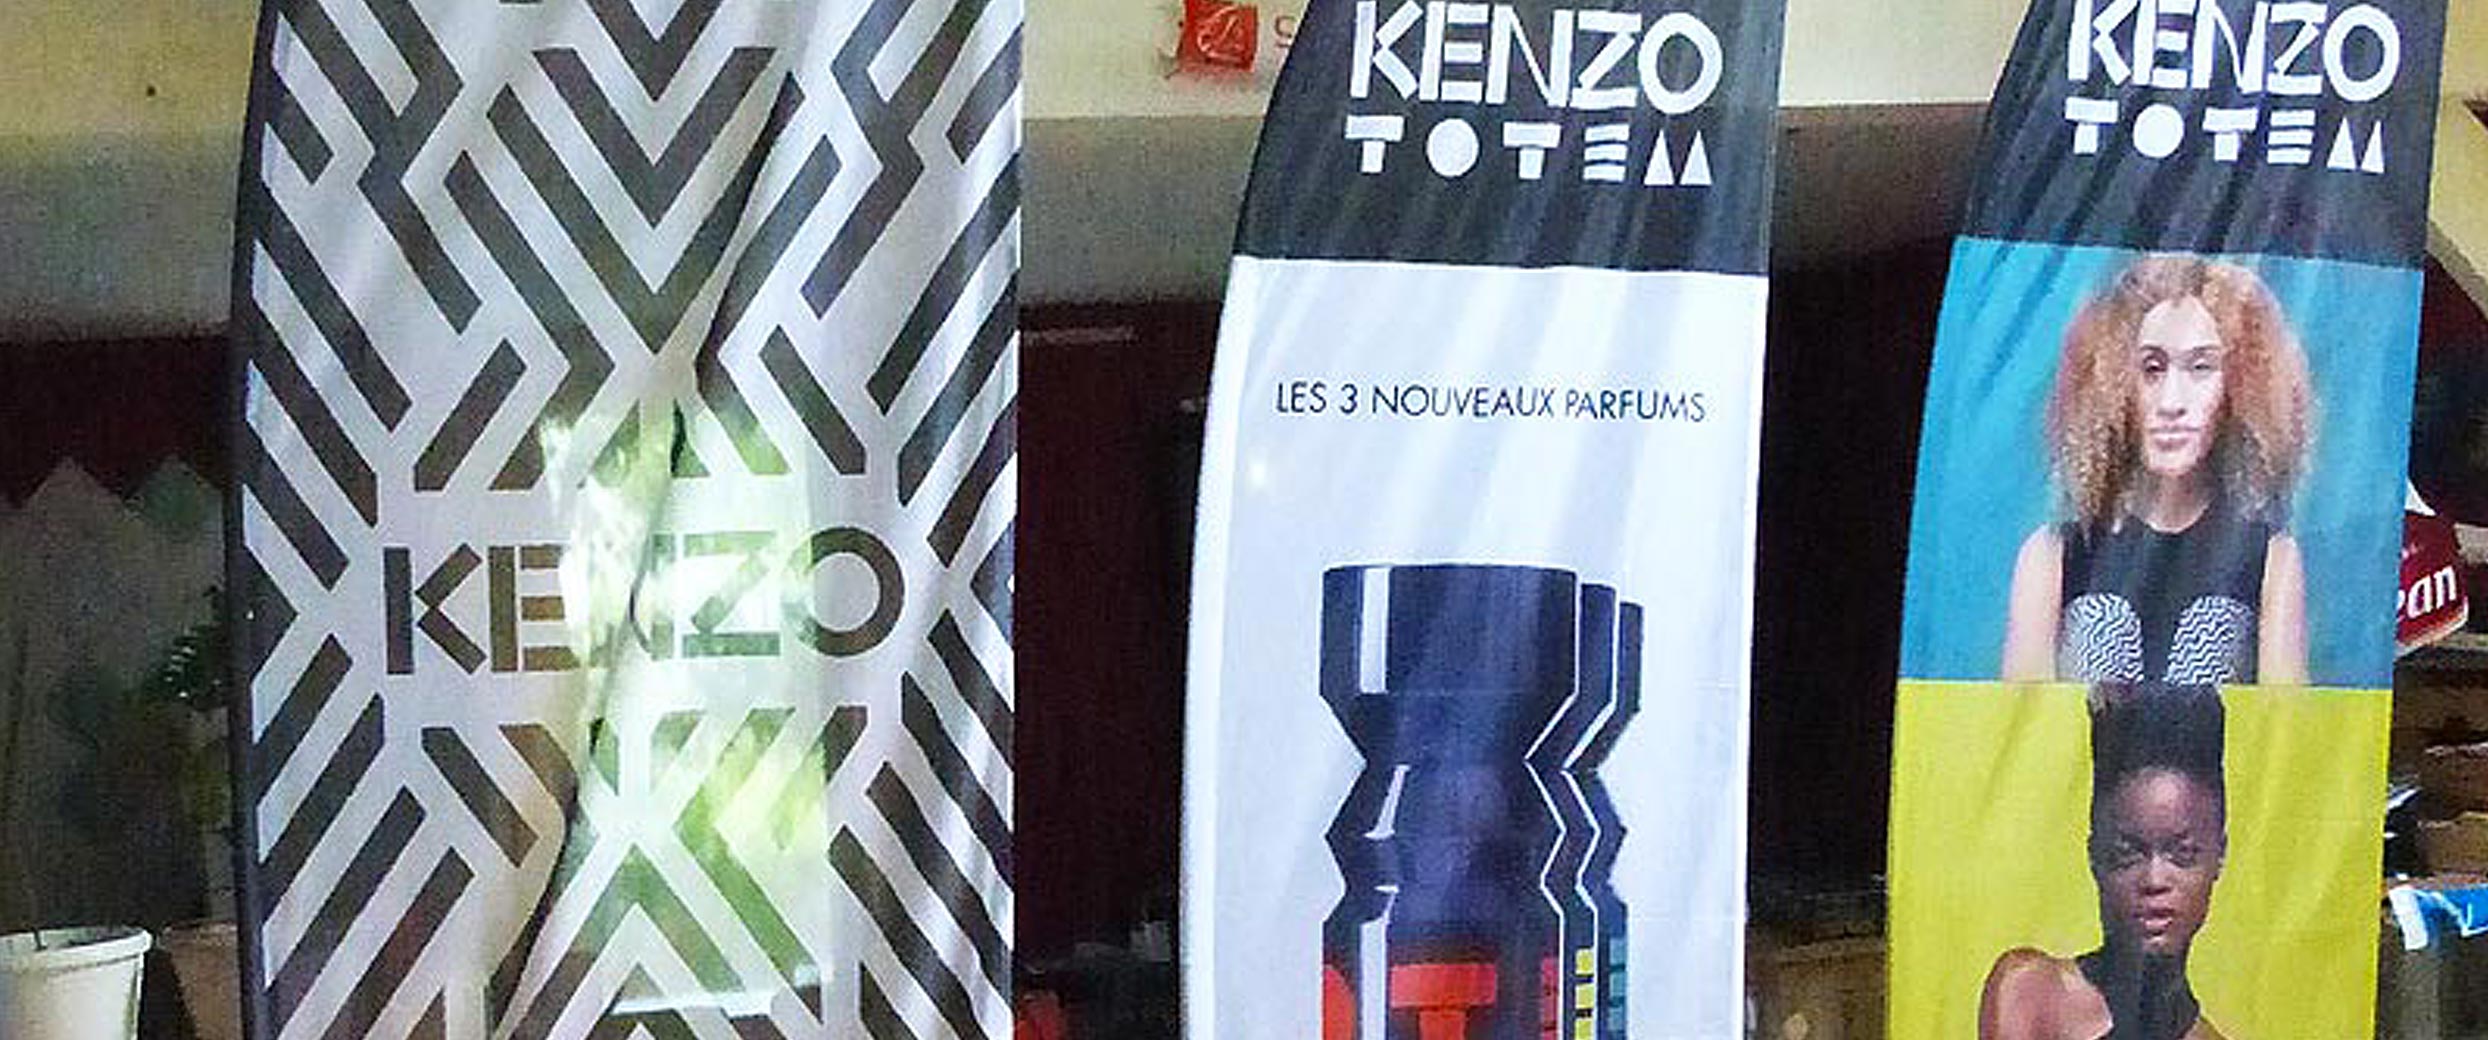 Voici des oriflammes avec marquages personnalisés réalisés pour la promotion de la marque Kenzo, dans le cadre d'une journée portes ouvertes dans un centre commercial, pour une boutique de parfums et de produits cosmétiques.